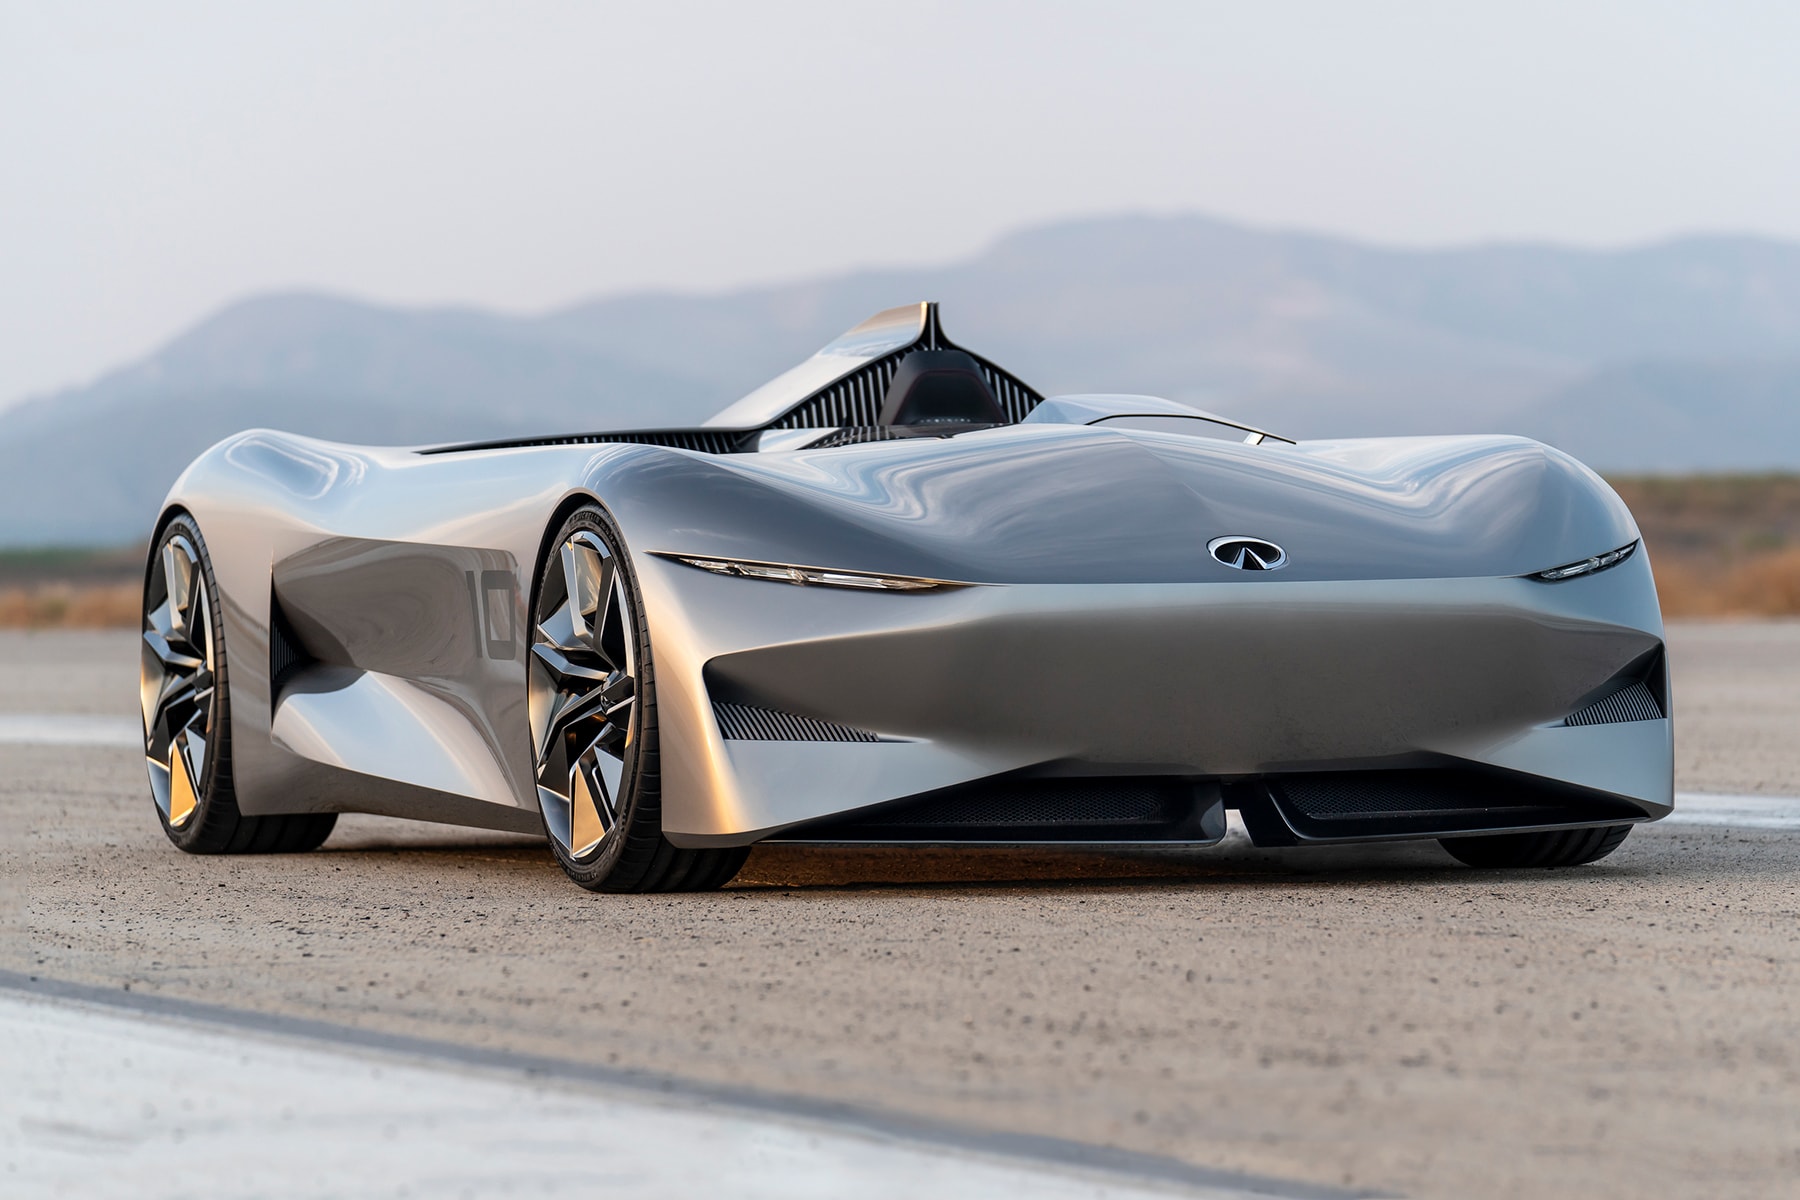 Infiniti prototype 10 concept car pebble beach tour delegance automotive show california august 2018 debut race track model